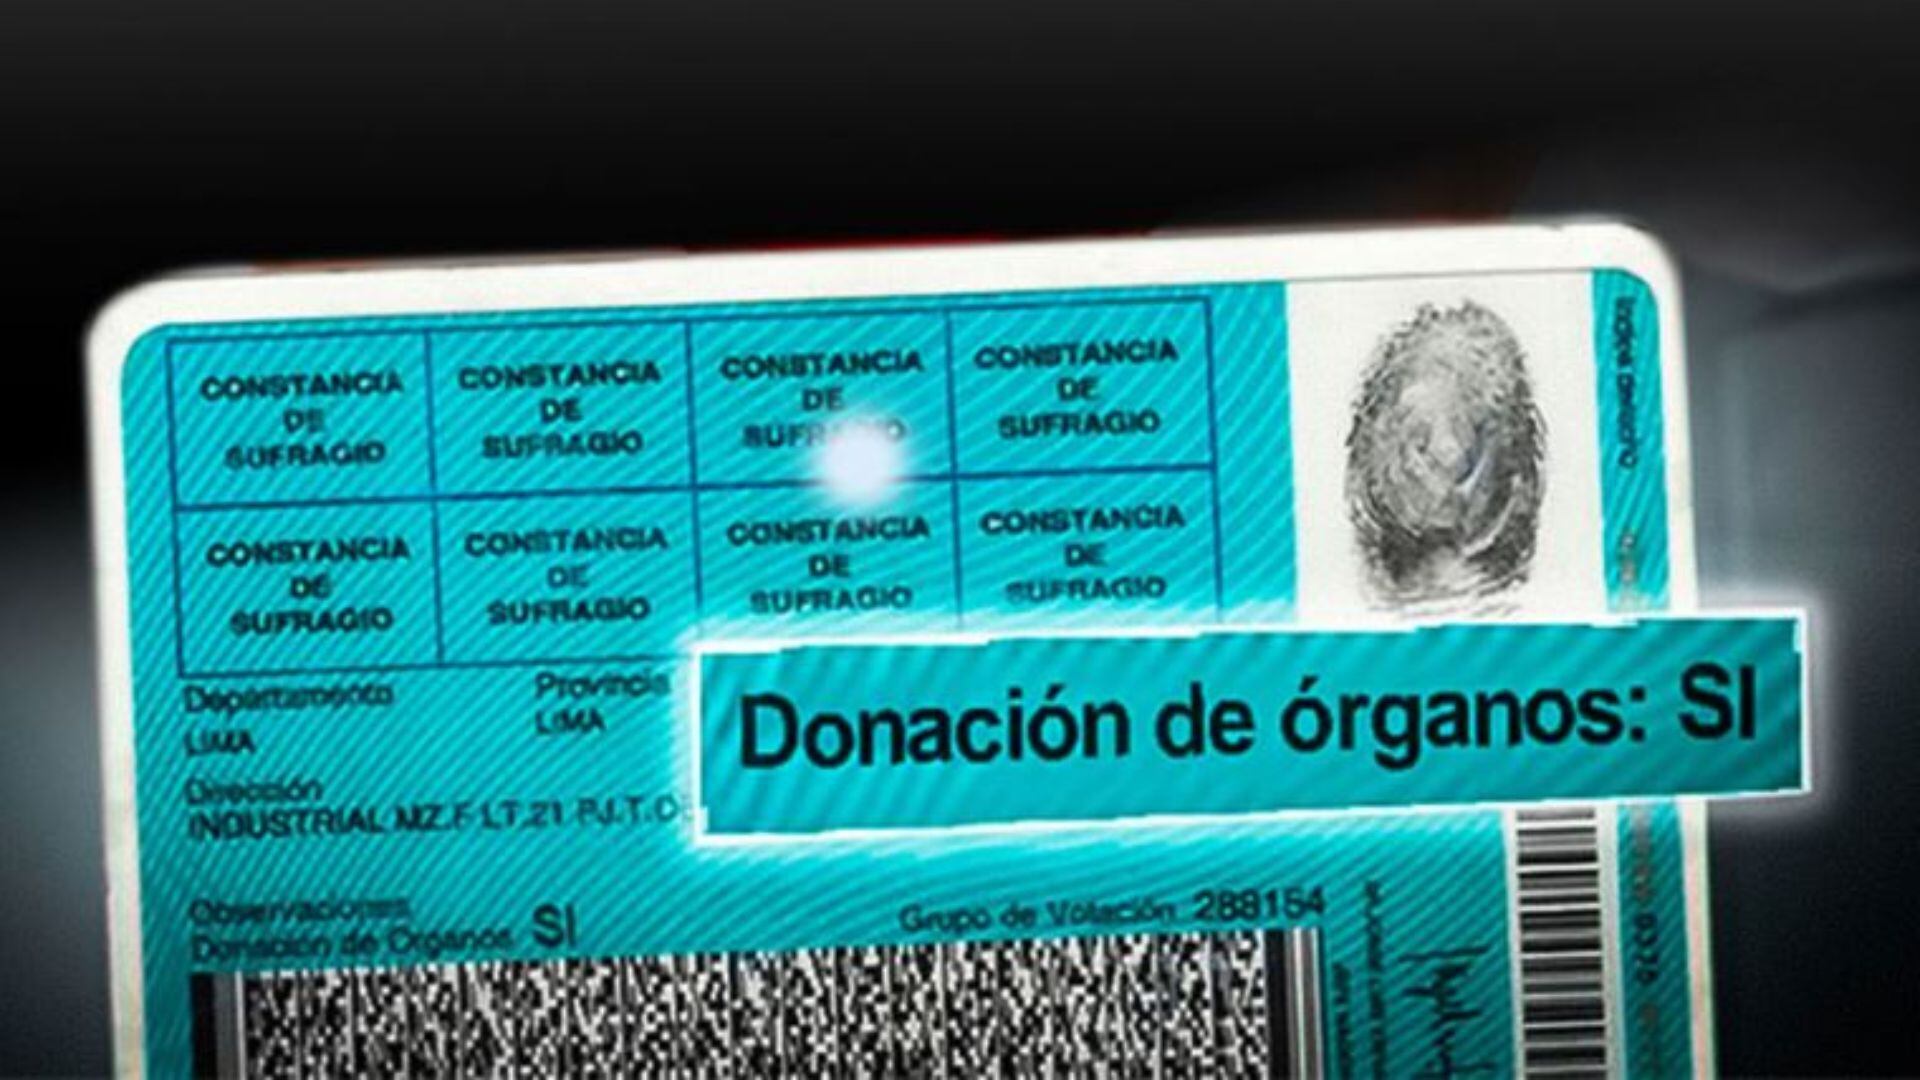 Beneficios para aquellos que pongan "Sí" en el DNI para donar órganos. (Foto: El Peruano)